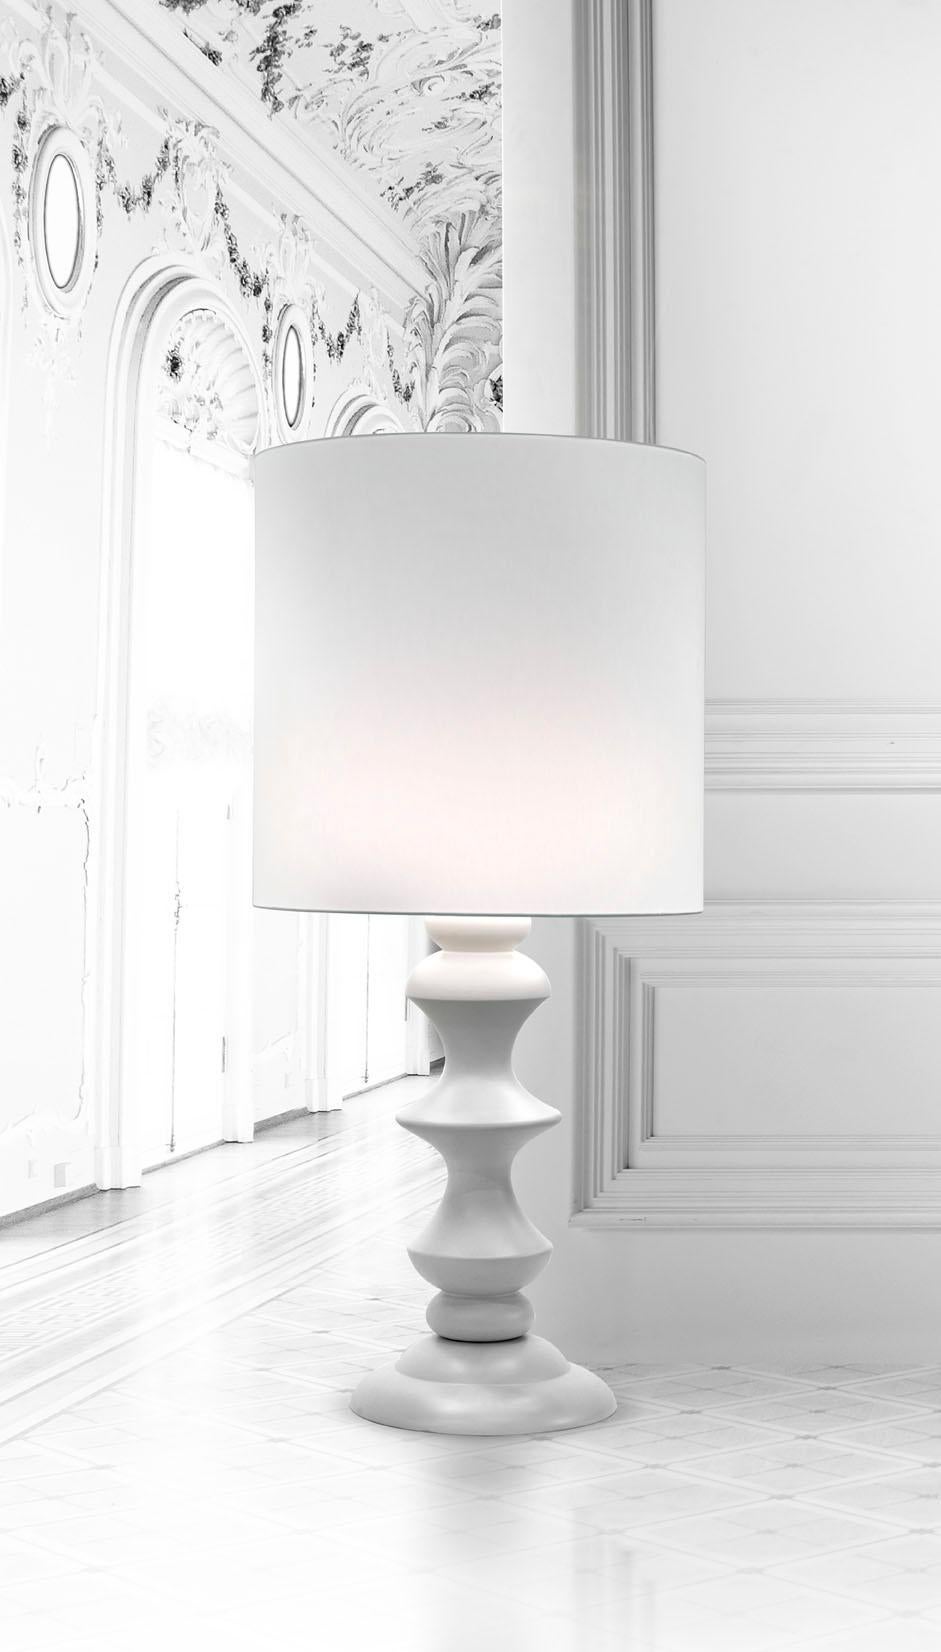 Keramische Lampe MIDA2
kabeljau. LM002
weiß glasiert
mit Lampenschirm aus Baumwolle

Maßnahmen: 
H. 120.0 cm.
Dm. 50.0 cm.